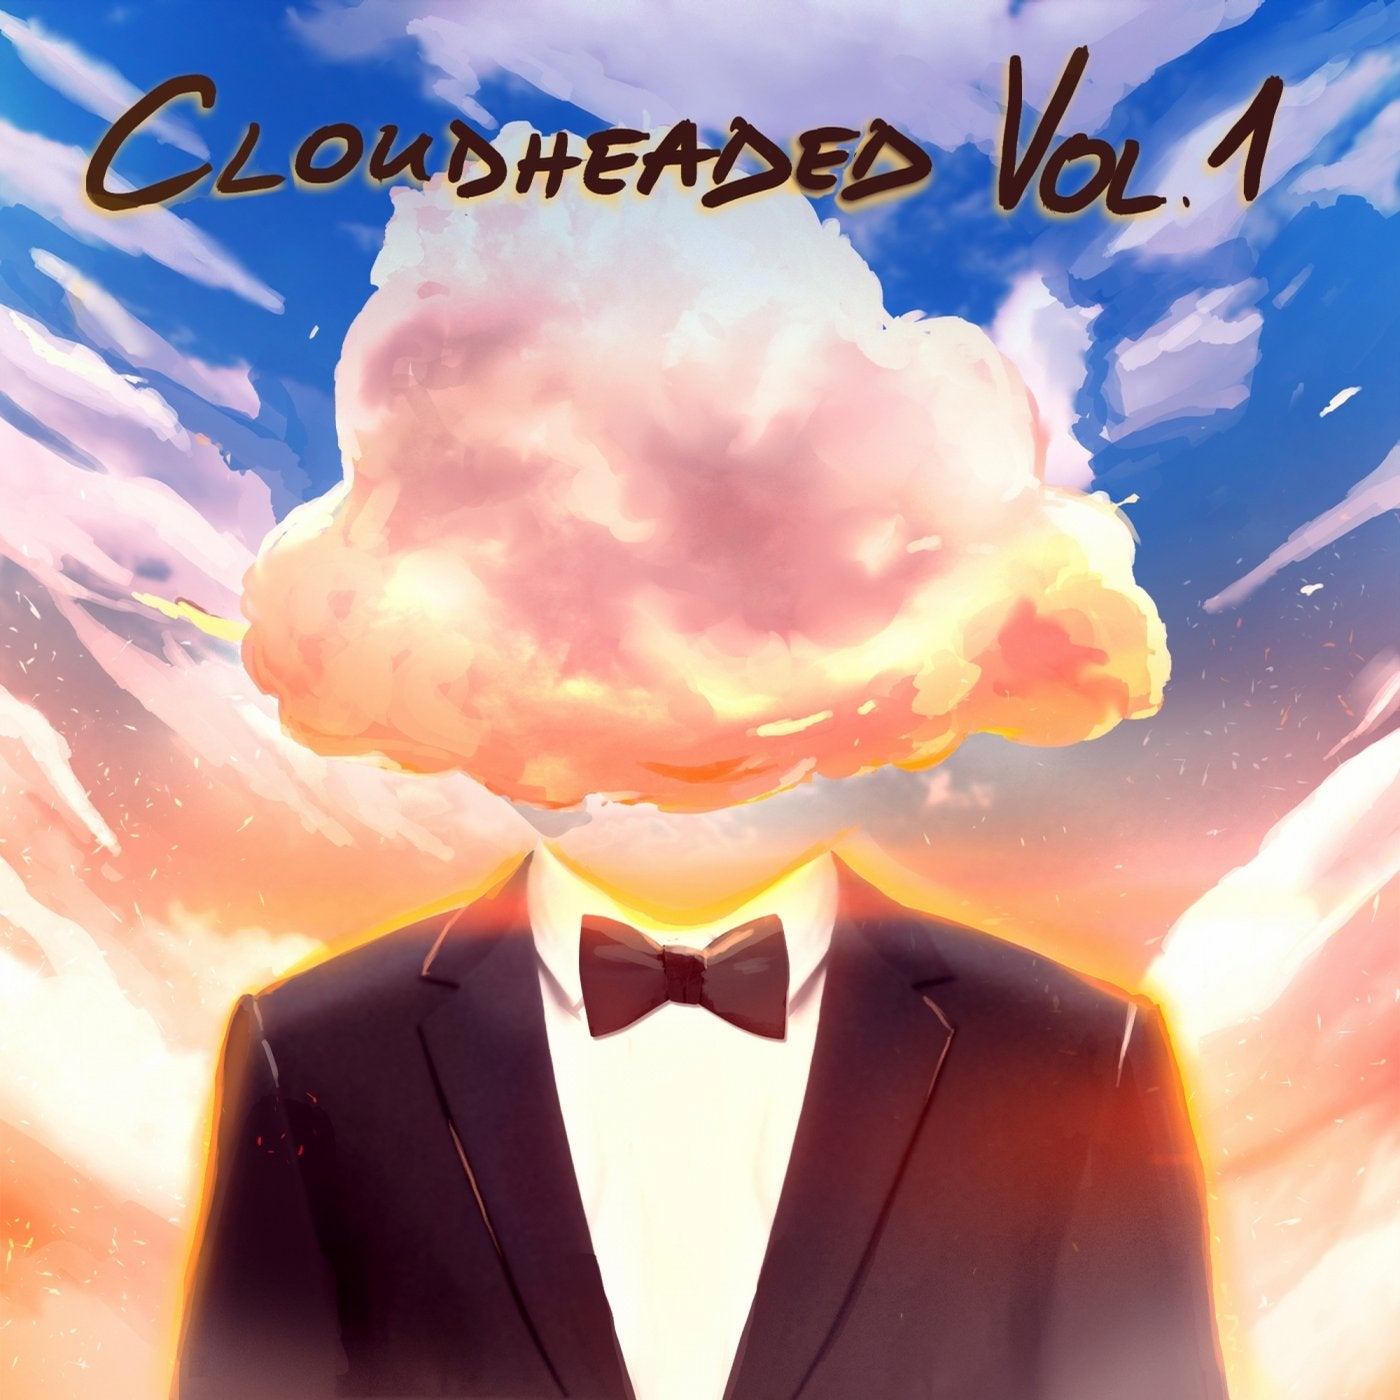 Cloudheaded Vol. 1